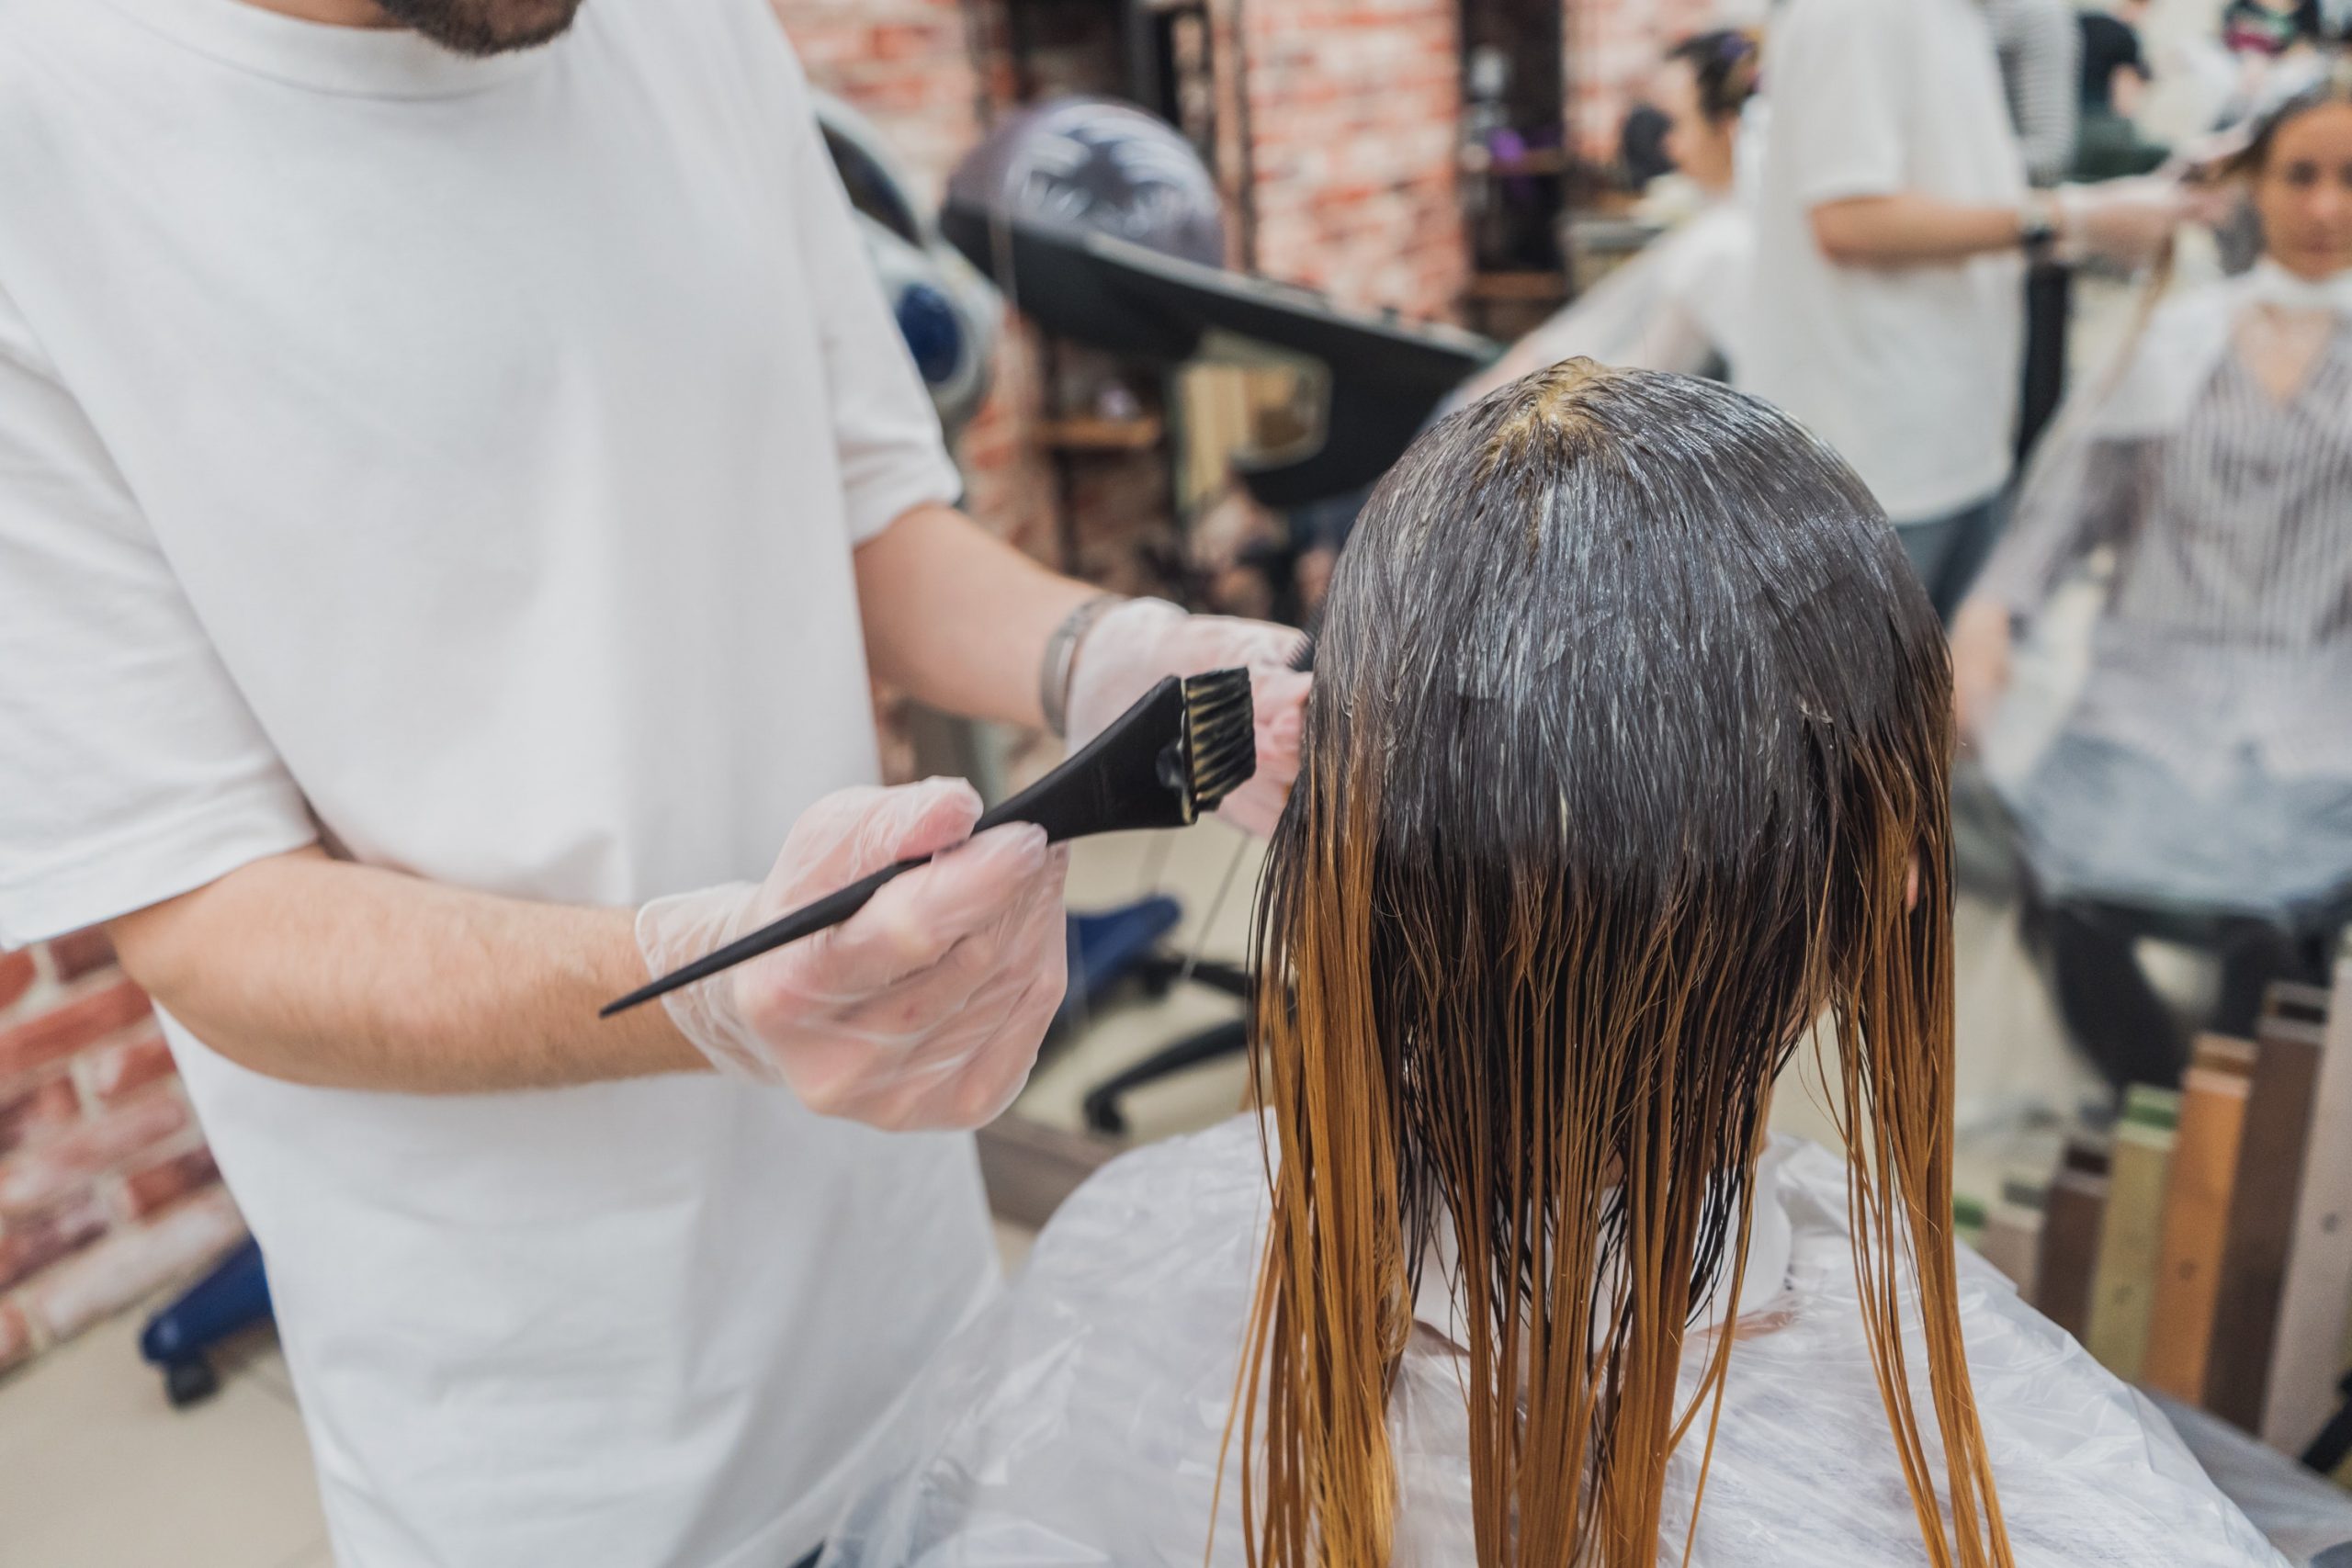 Eine langhaarige Frau sitzt im Friseursalon während die Frisörin mit einem Pinsel eine permanente Haarfarbe aufträgt.